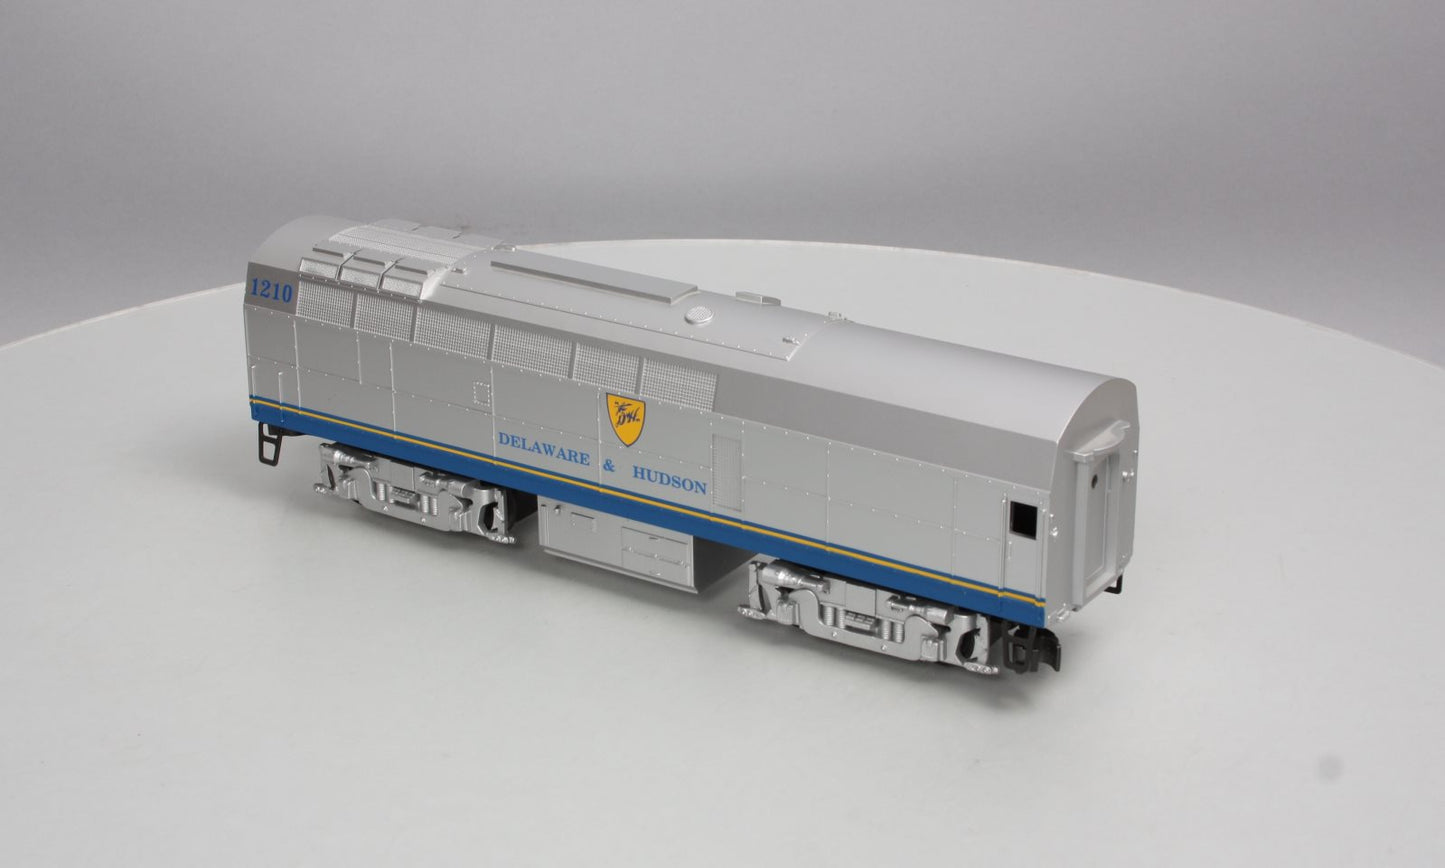 Williams SN-3001B O D&H Baldwin Shark Locomotive (Dummy)  #1210 LN/Box